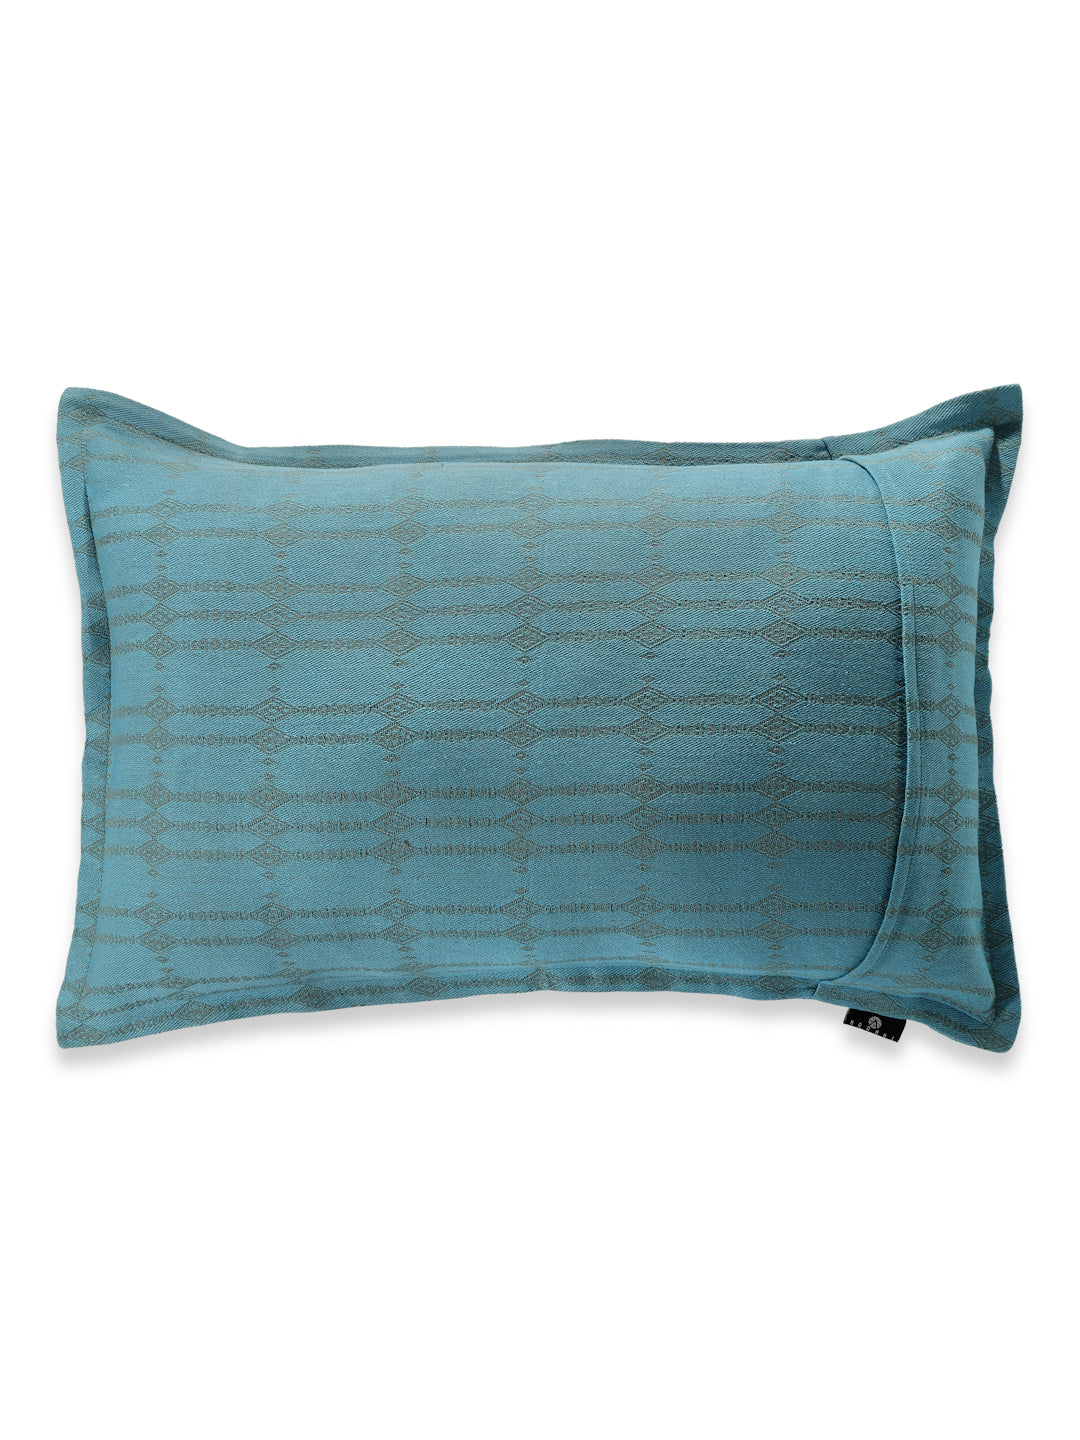 Arrabi Blue Striped Handwoven Cotton Set of 2 Pillow Covers (70 x 45 cm)